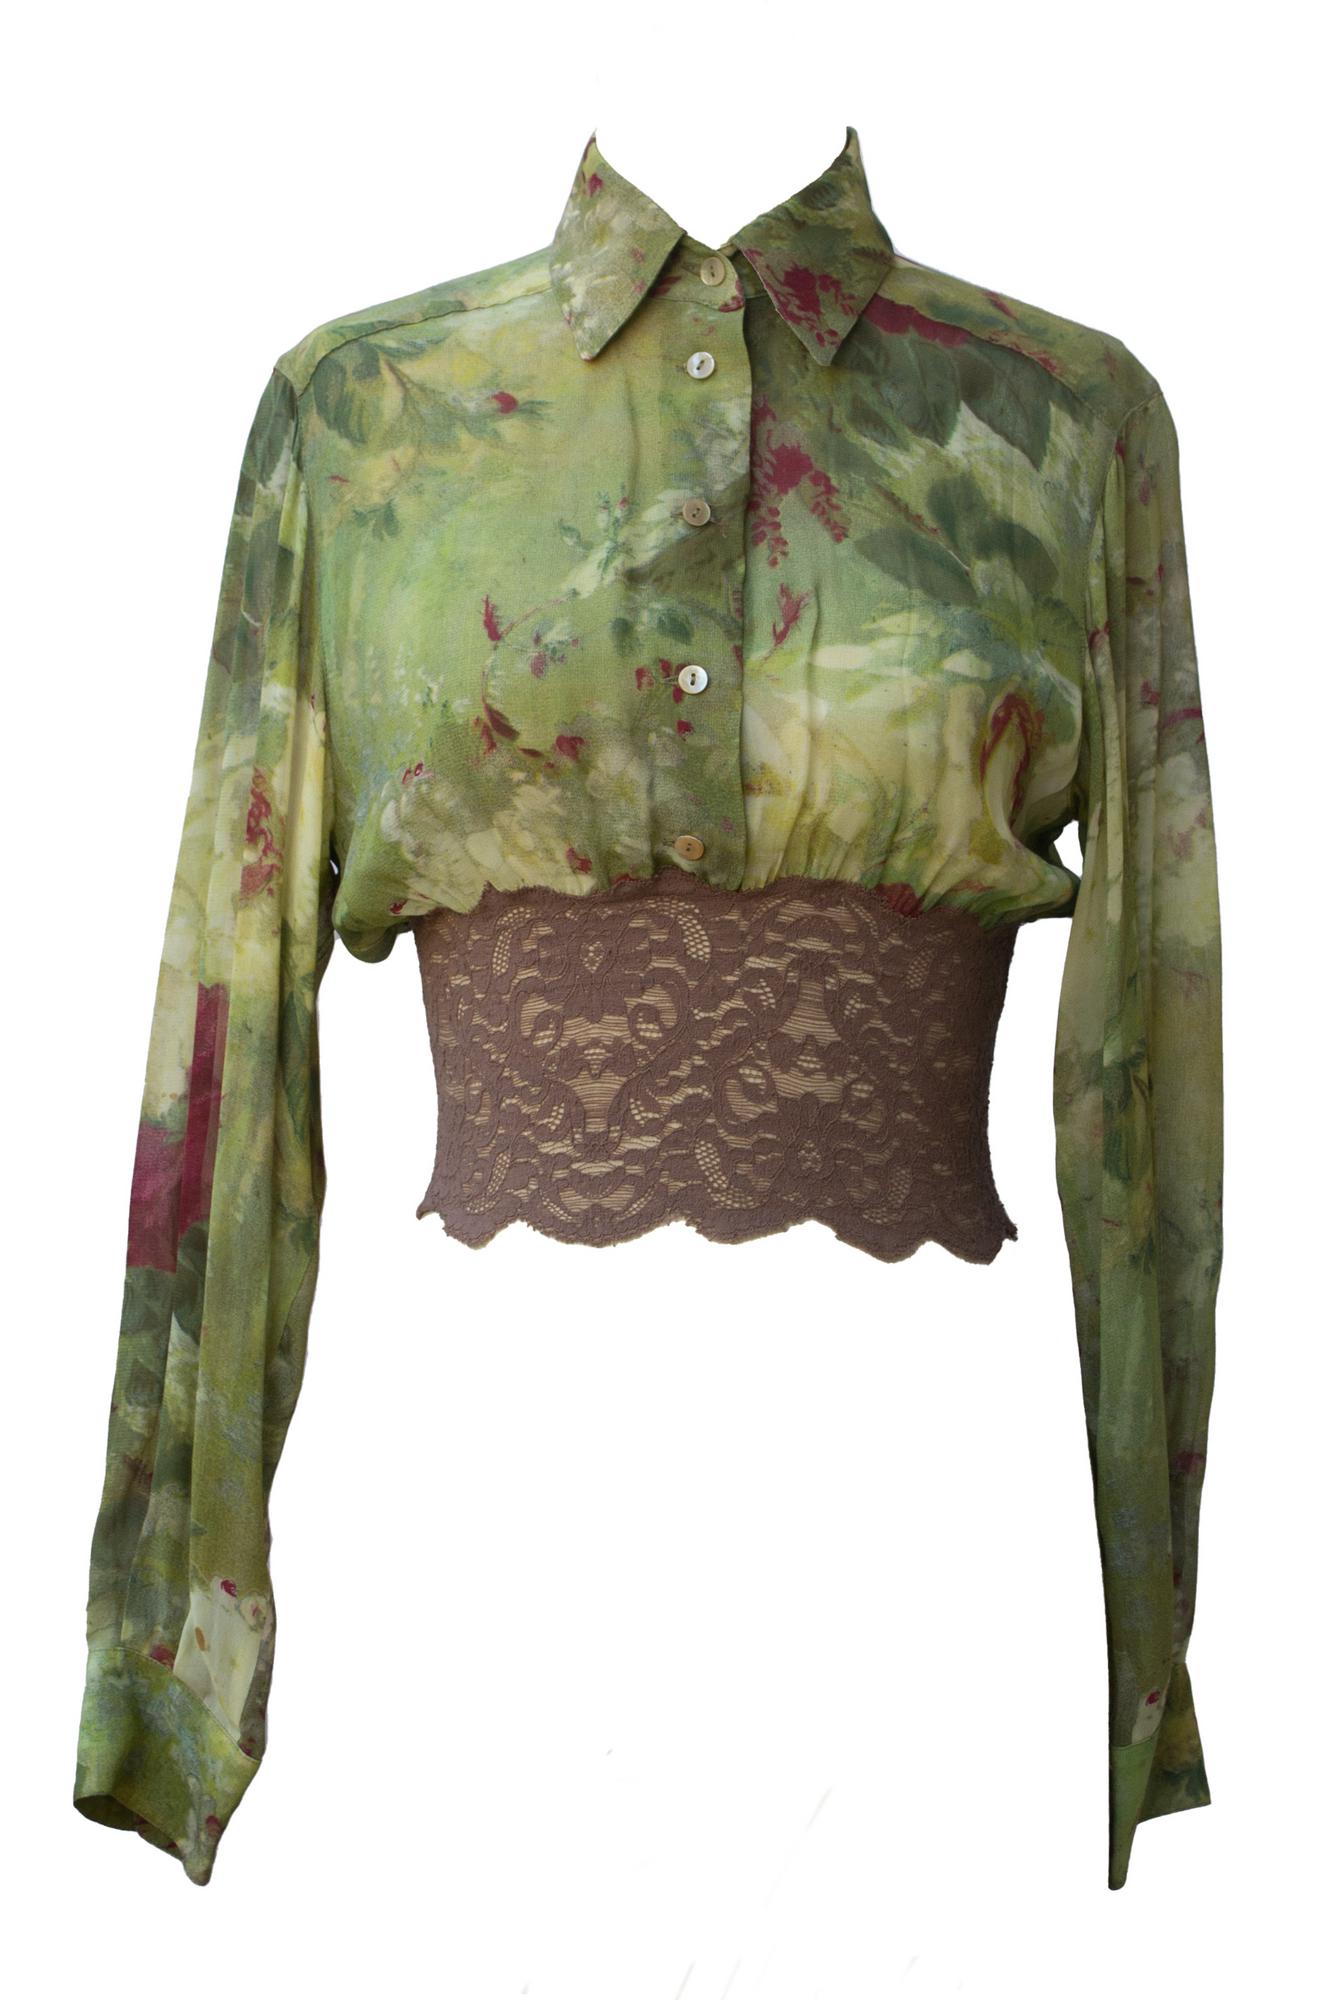 Jean Paul Gaultier SHIRT BLOUSE Description: Shirt blouse in crepe georgette...